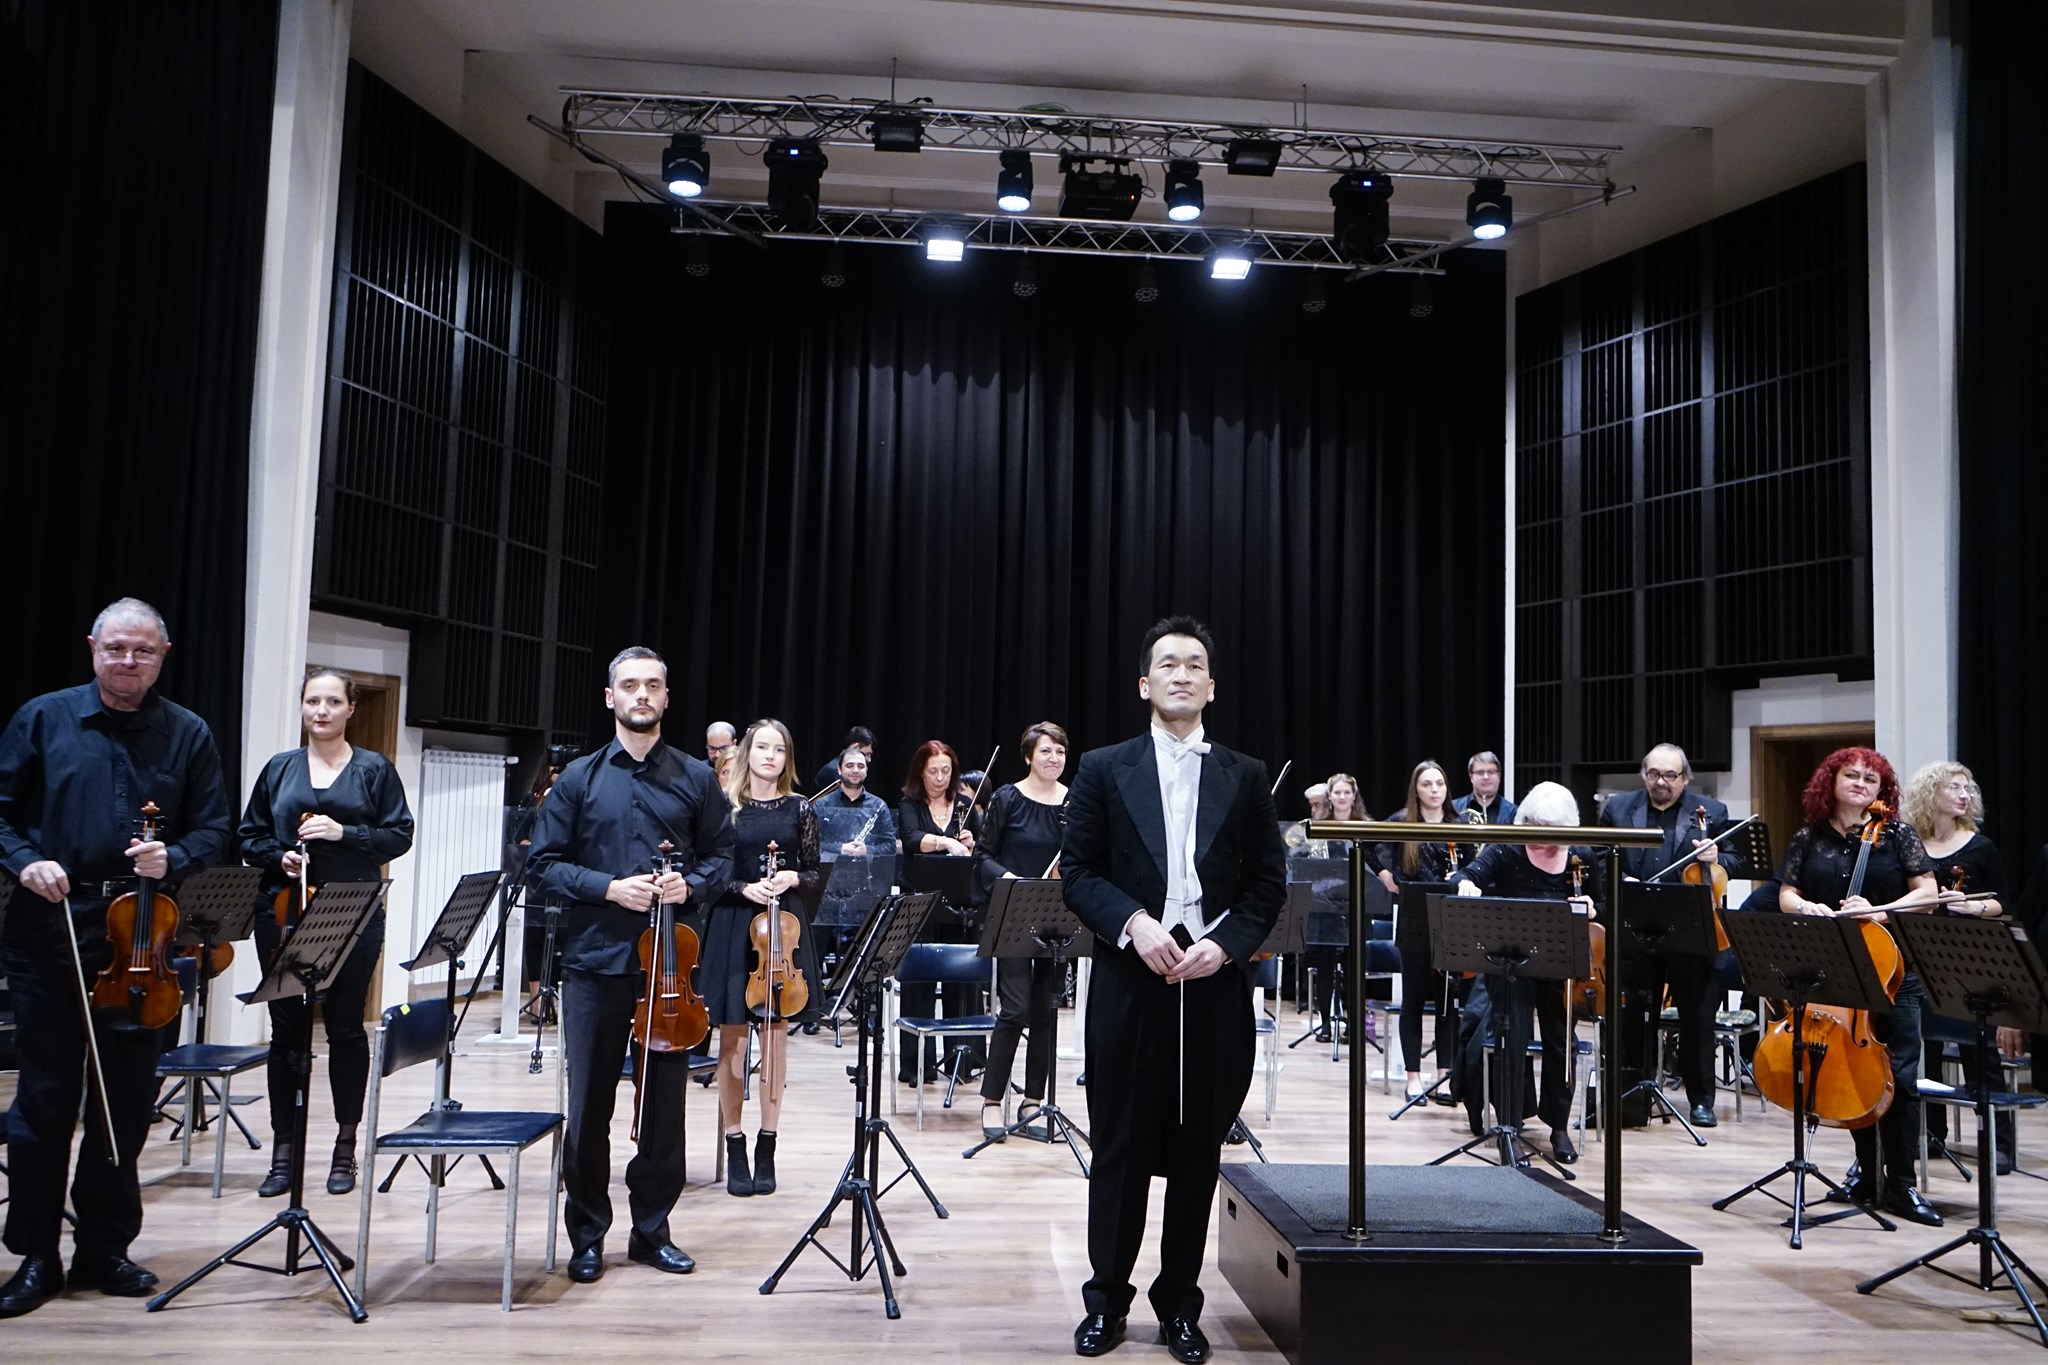 Симфониета – Враца подарява онлайн концерт на Симфония №3 от Бетовен